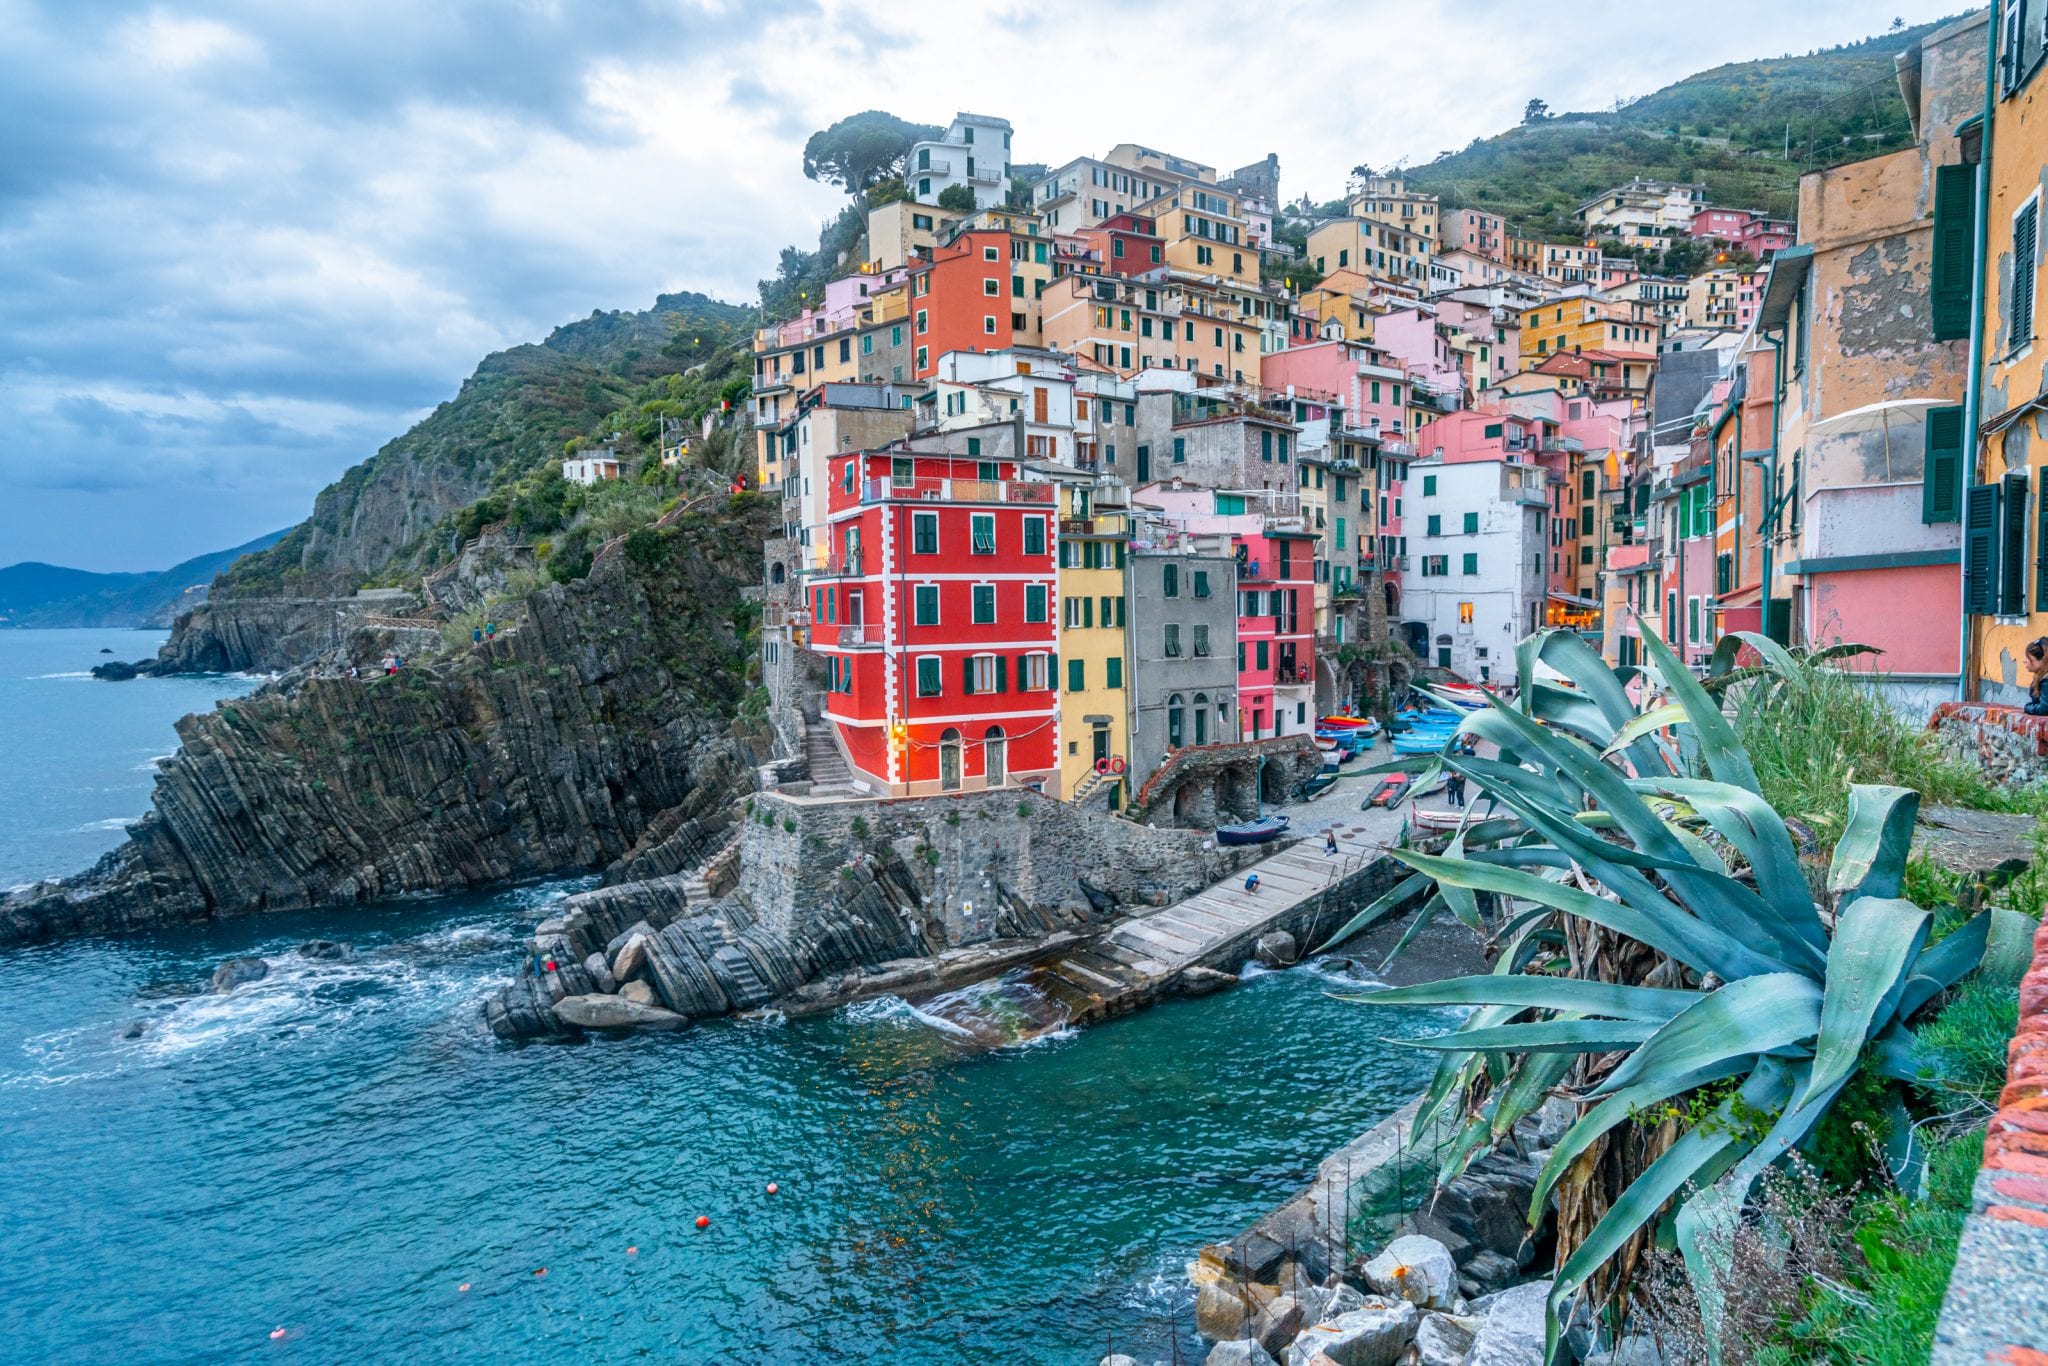 Mutlaka gezmeniz gereken 7 masal diyarı İtalya köyü - Cinque Terre